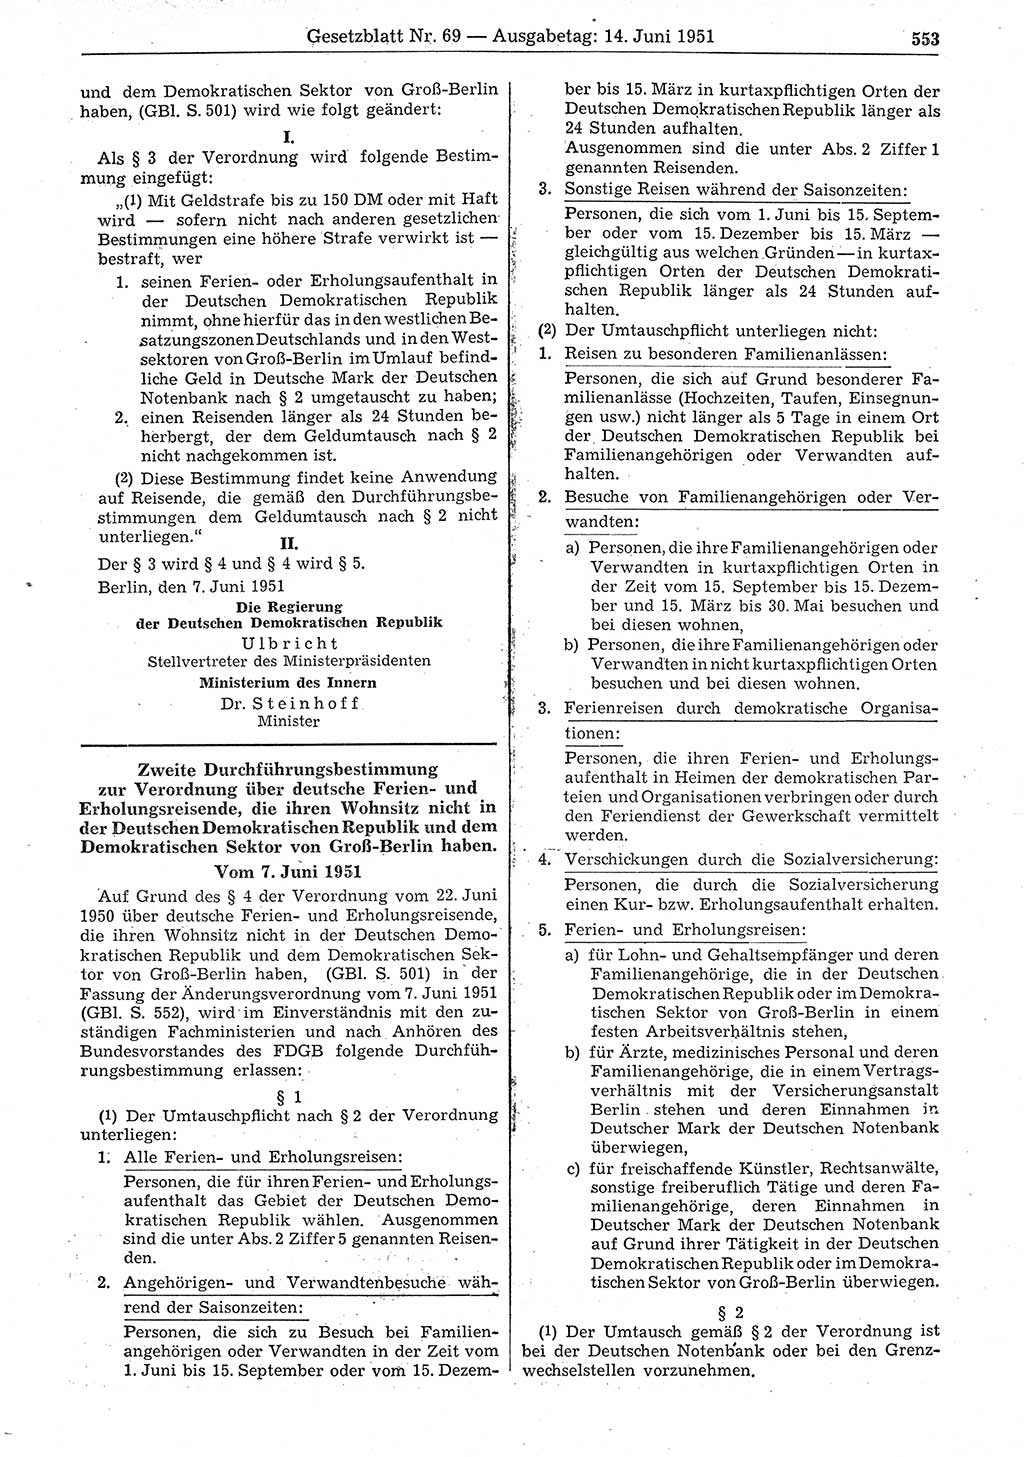 Gesetzblatt (GBl.) der Deutschen Demokratischen Republik (DDR) 1951, Seite 553 (GBl. DDR 1951, S. 553)